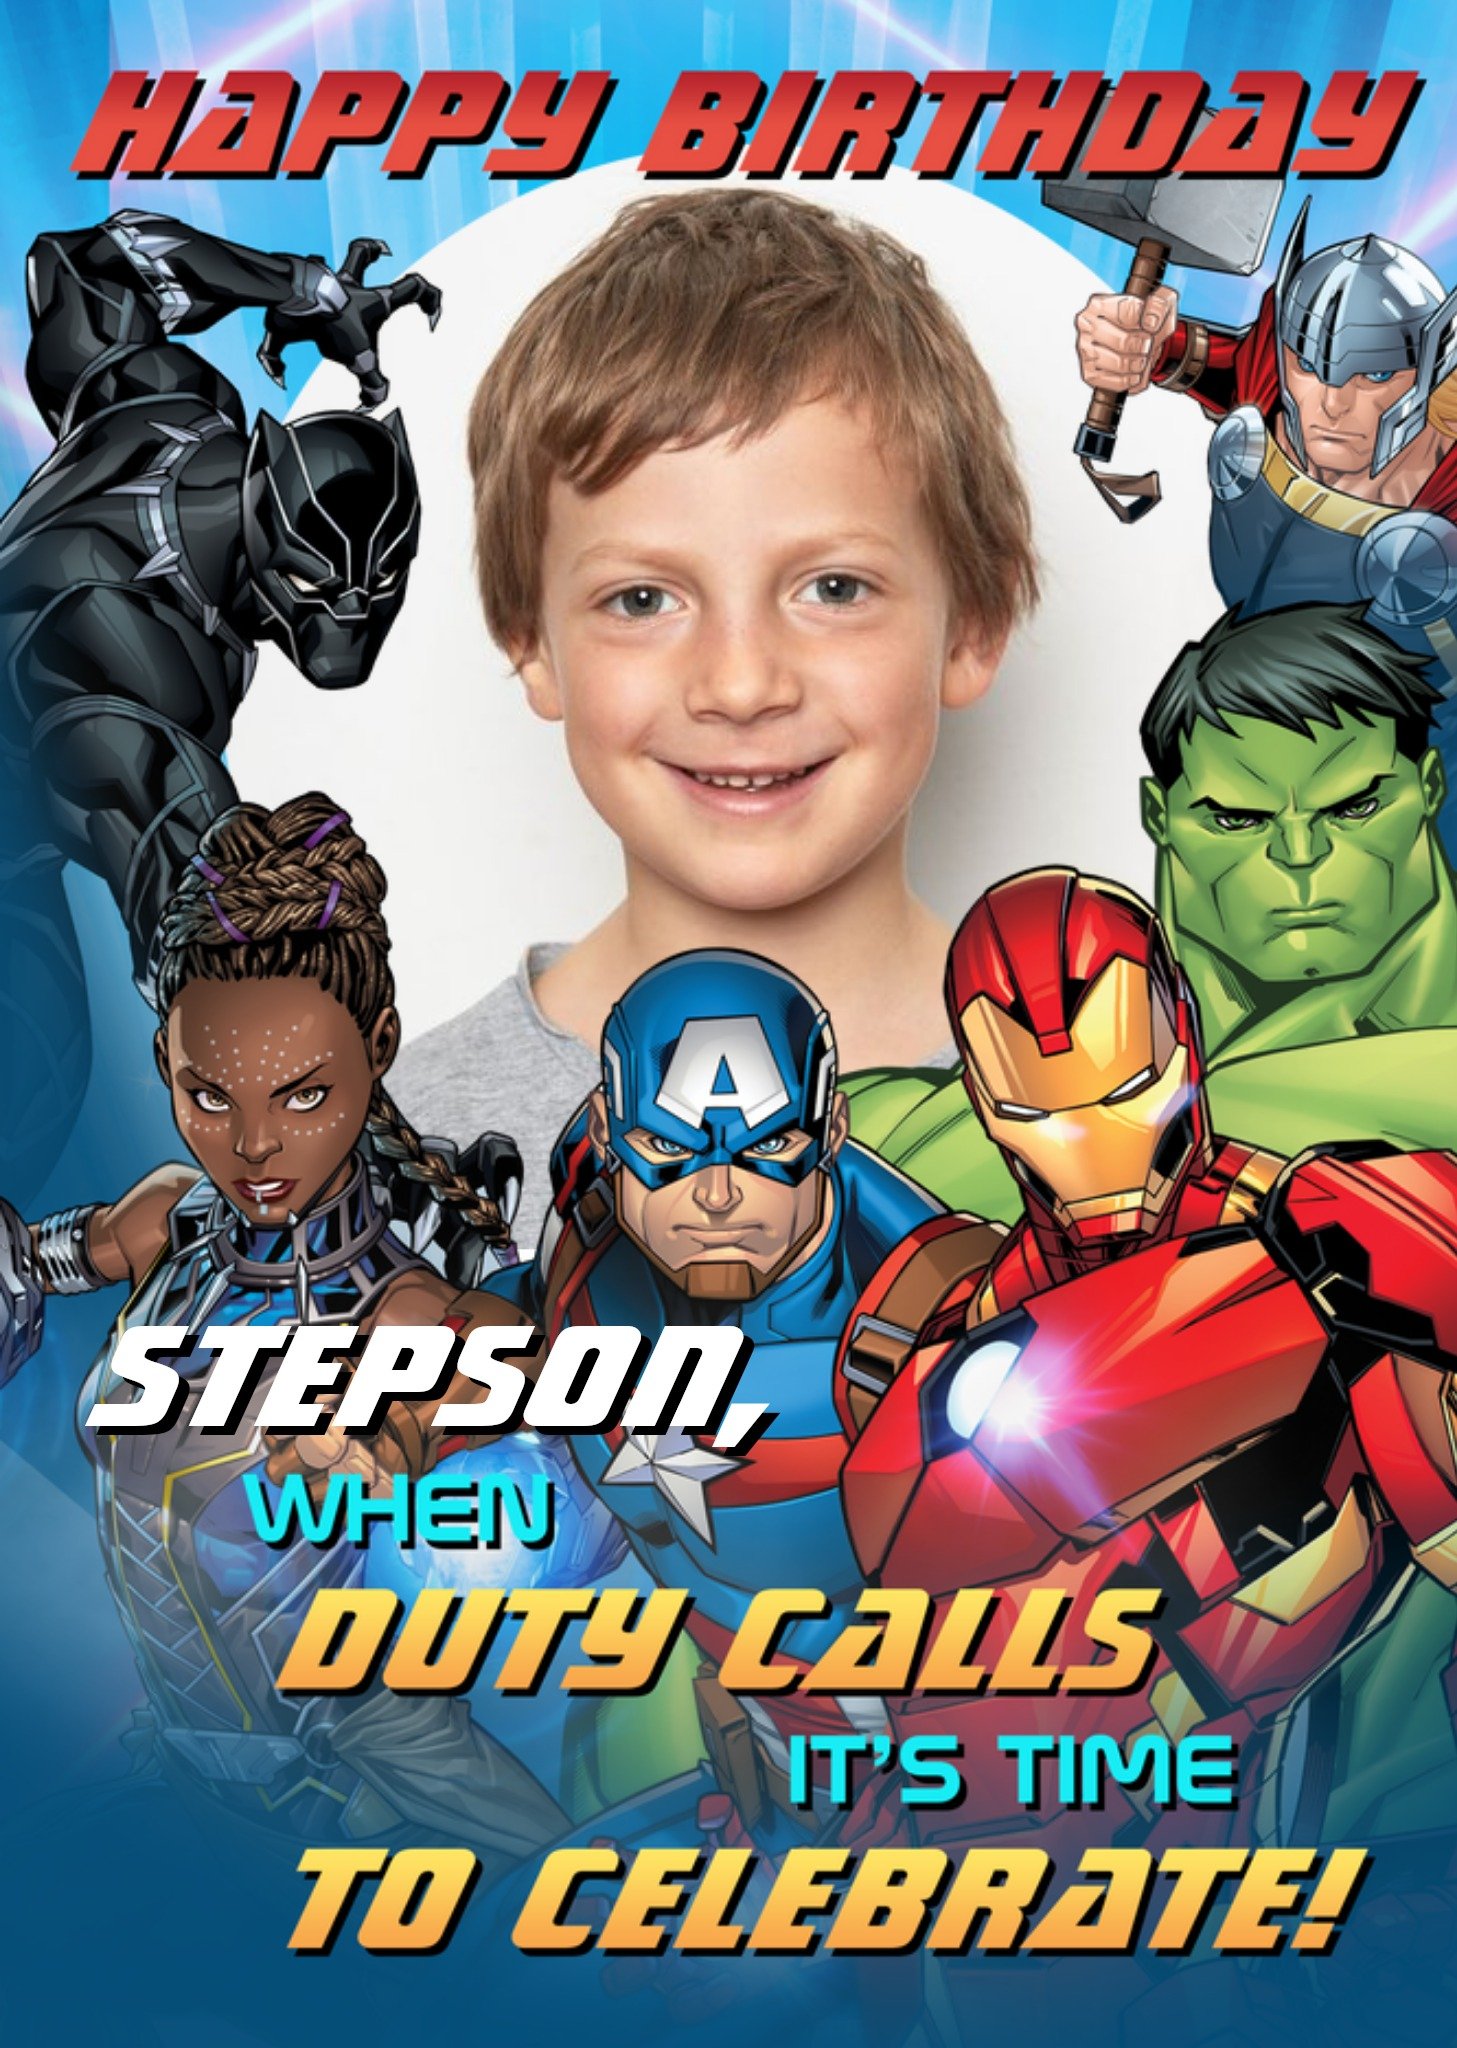 Disney Marvel Avengers Stepson Photo Upload Birthday Card - The Avengers Ecard